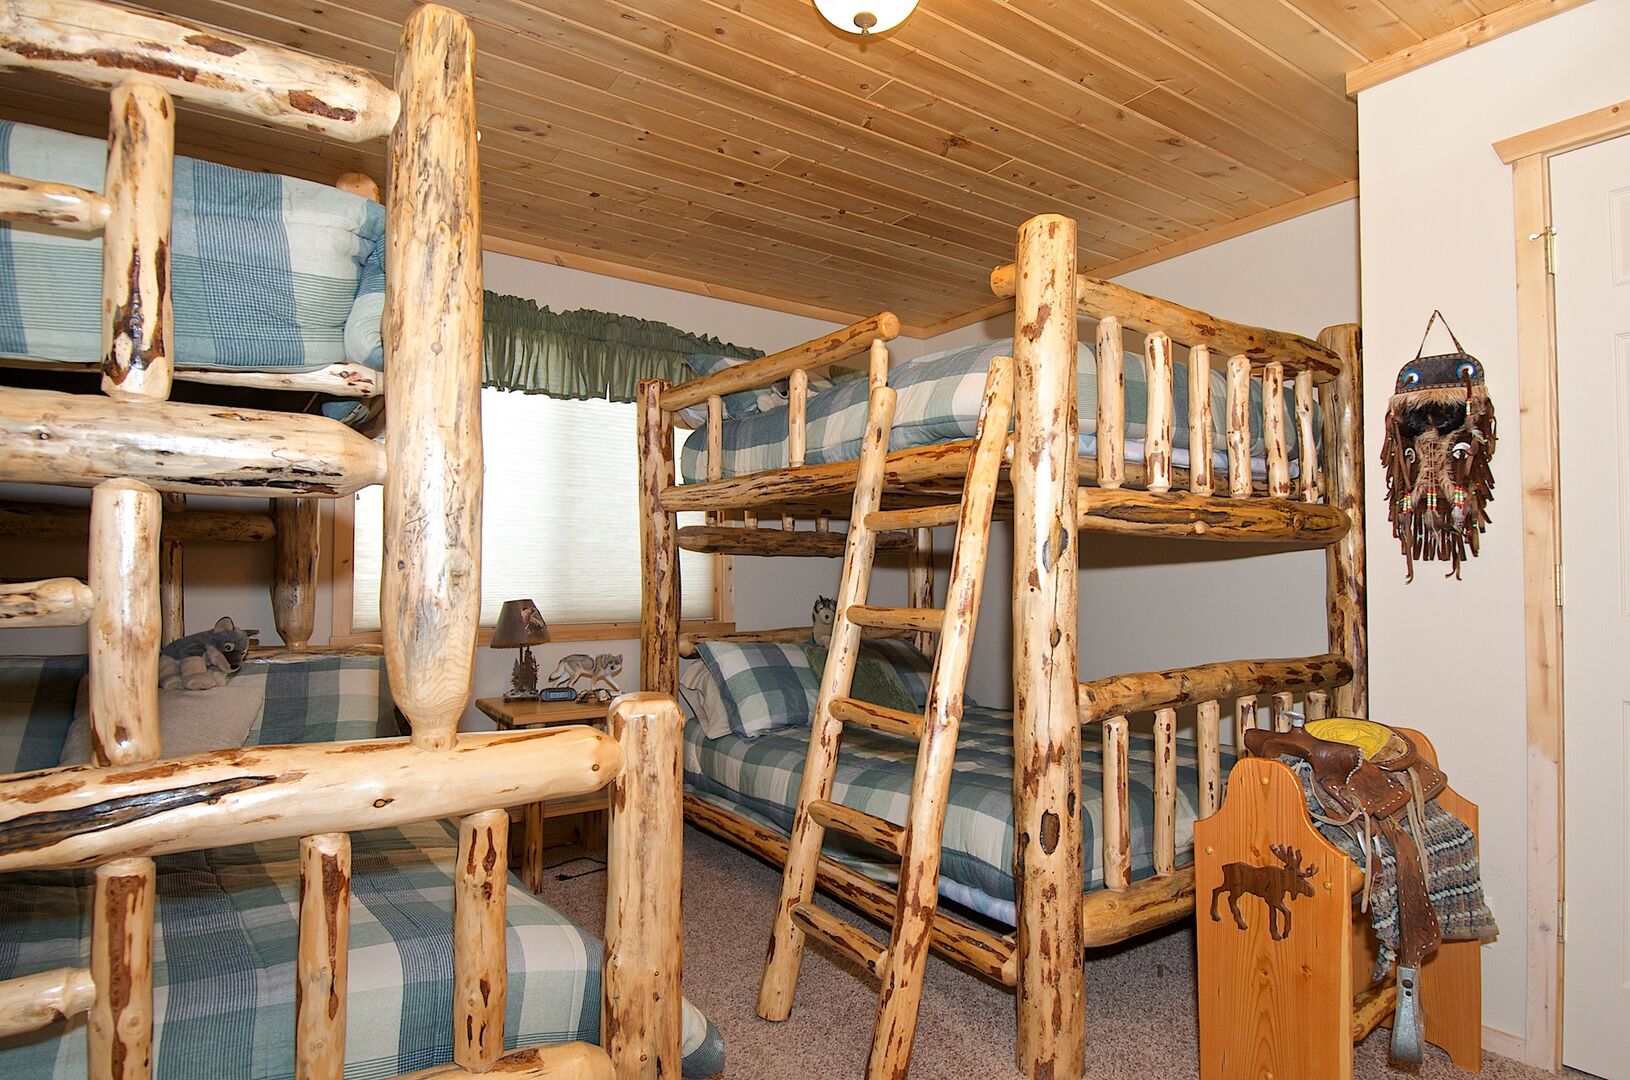 Wagon Wheel ~ bedroom #1 w/ a double over double bunk and a single over double bunk and private ensuite bathroom